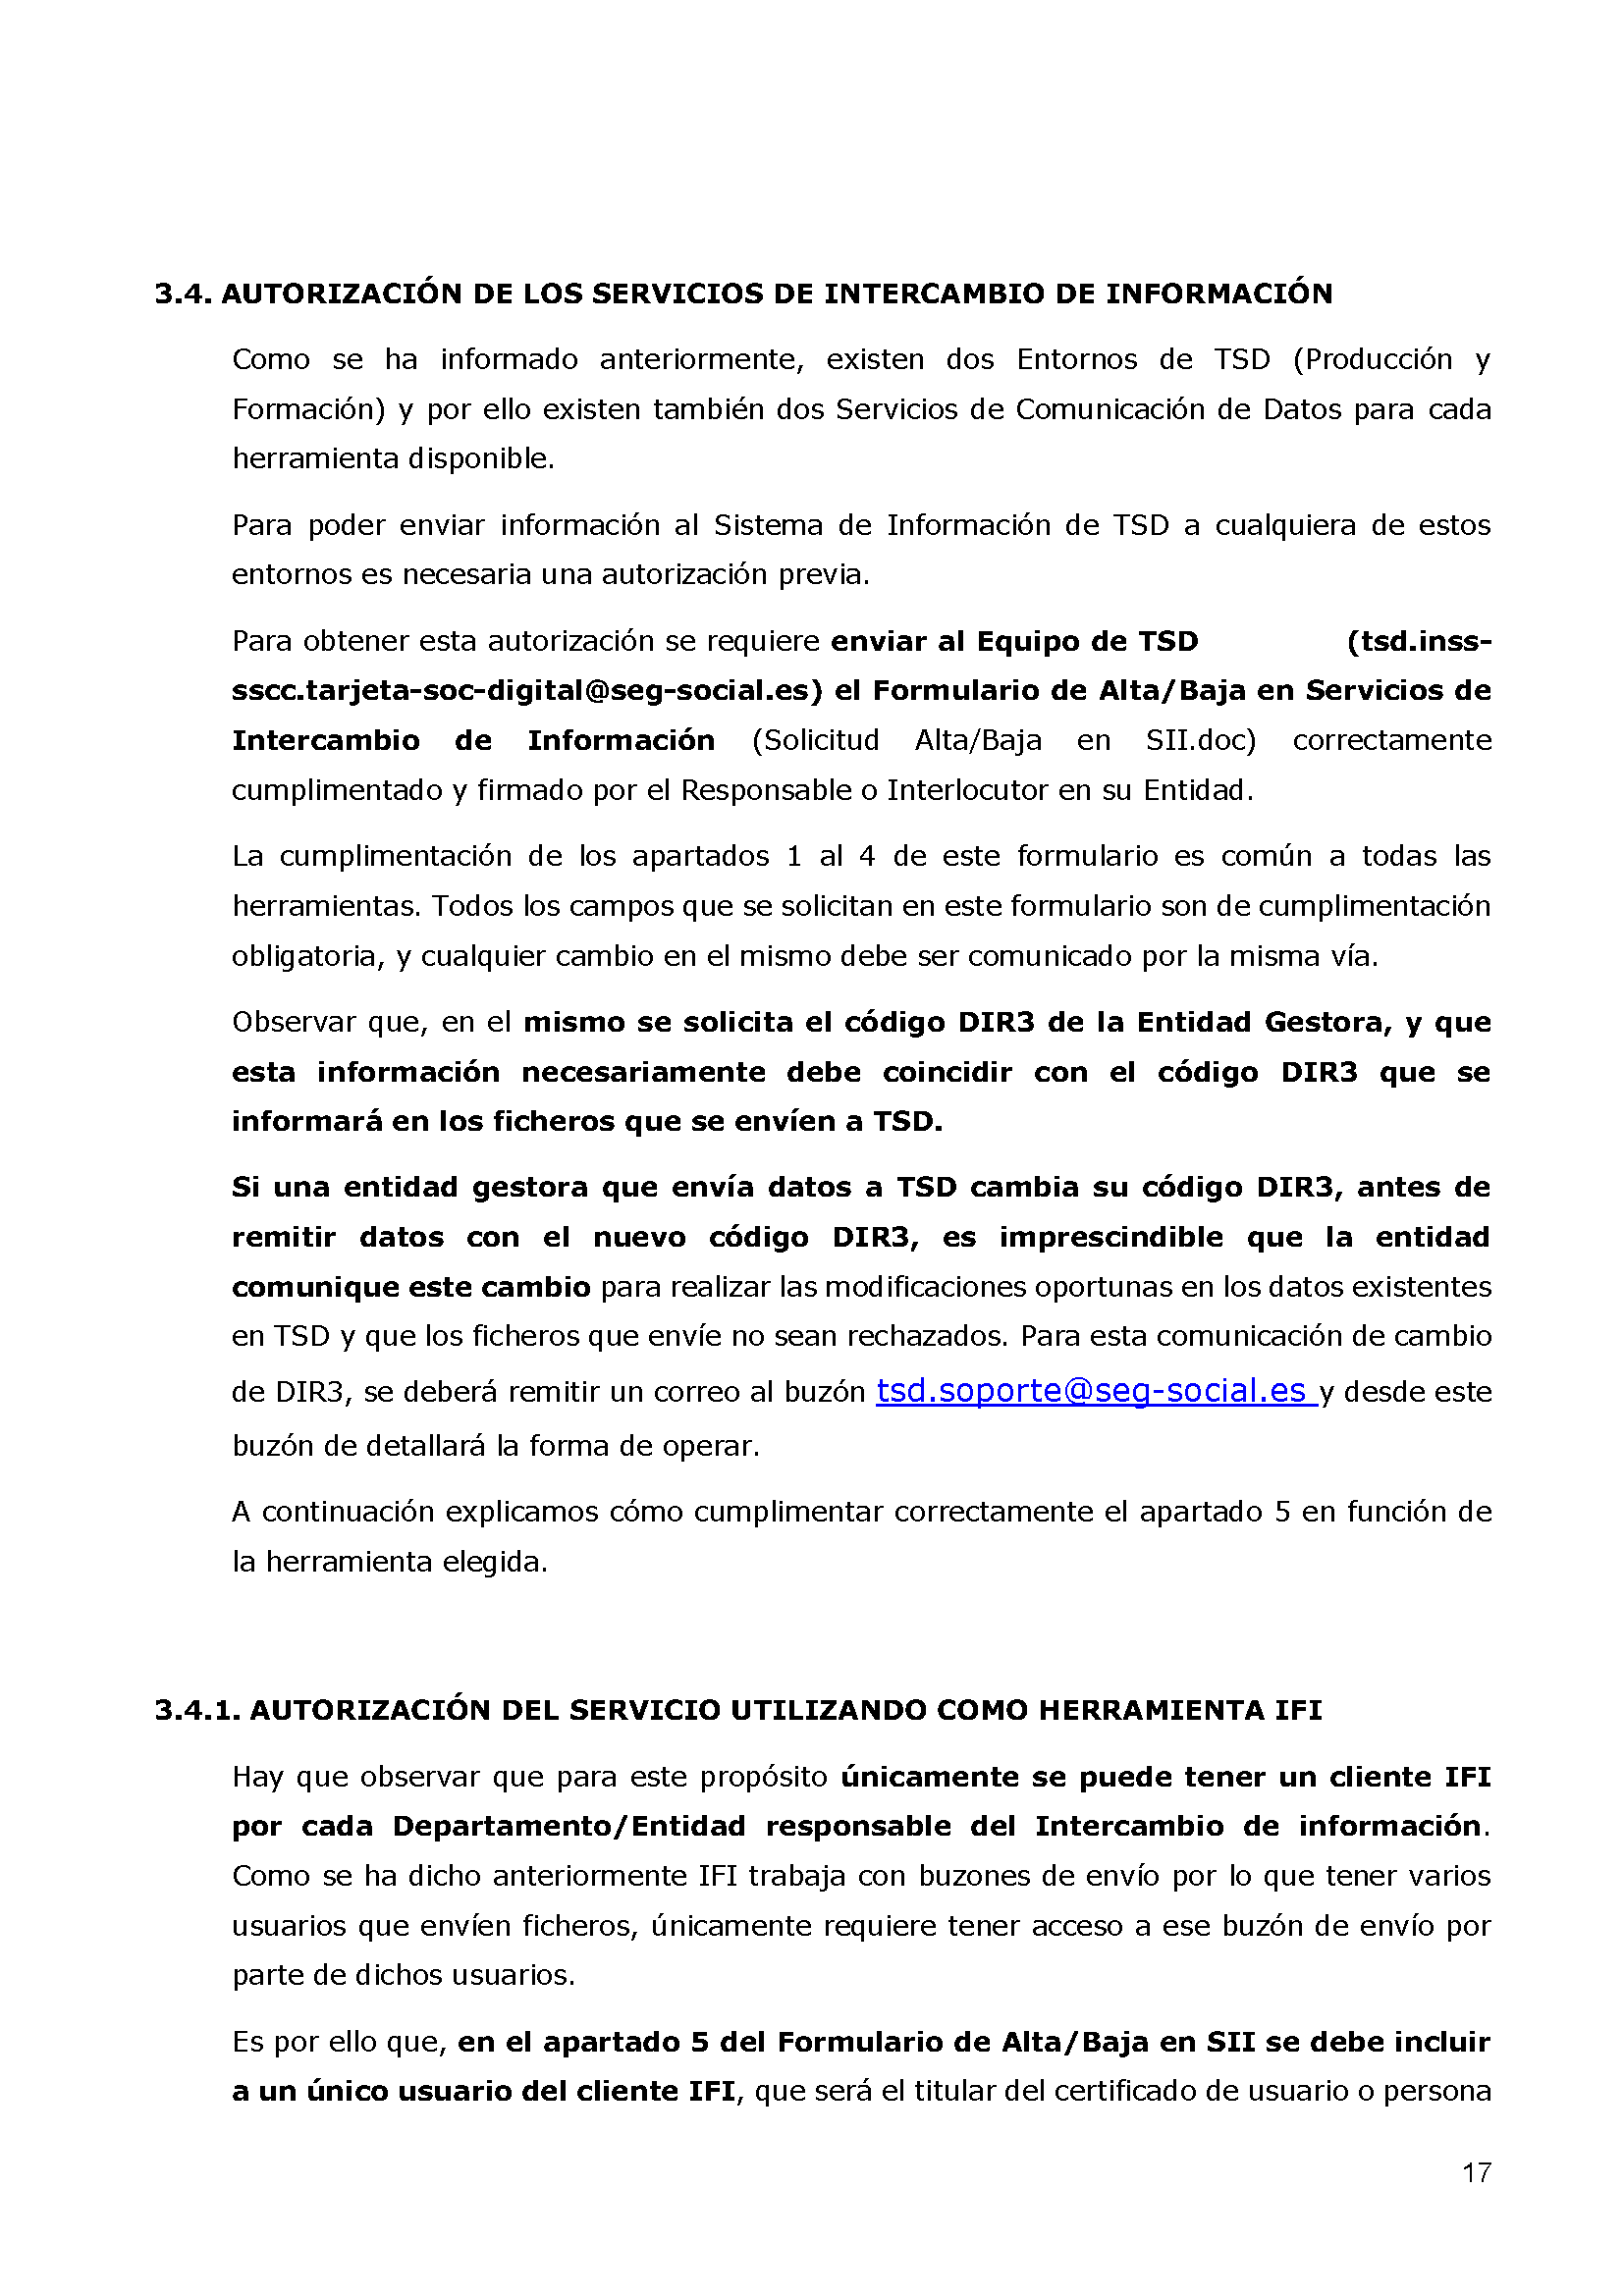 ANEXOS PROTOCOLO DE INTERCAMBIO DE FICHEROS PARA LA CARGA DE DATOS EN TARJETA SOCIAL DIGITAL Pag 17